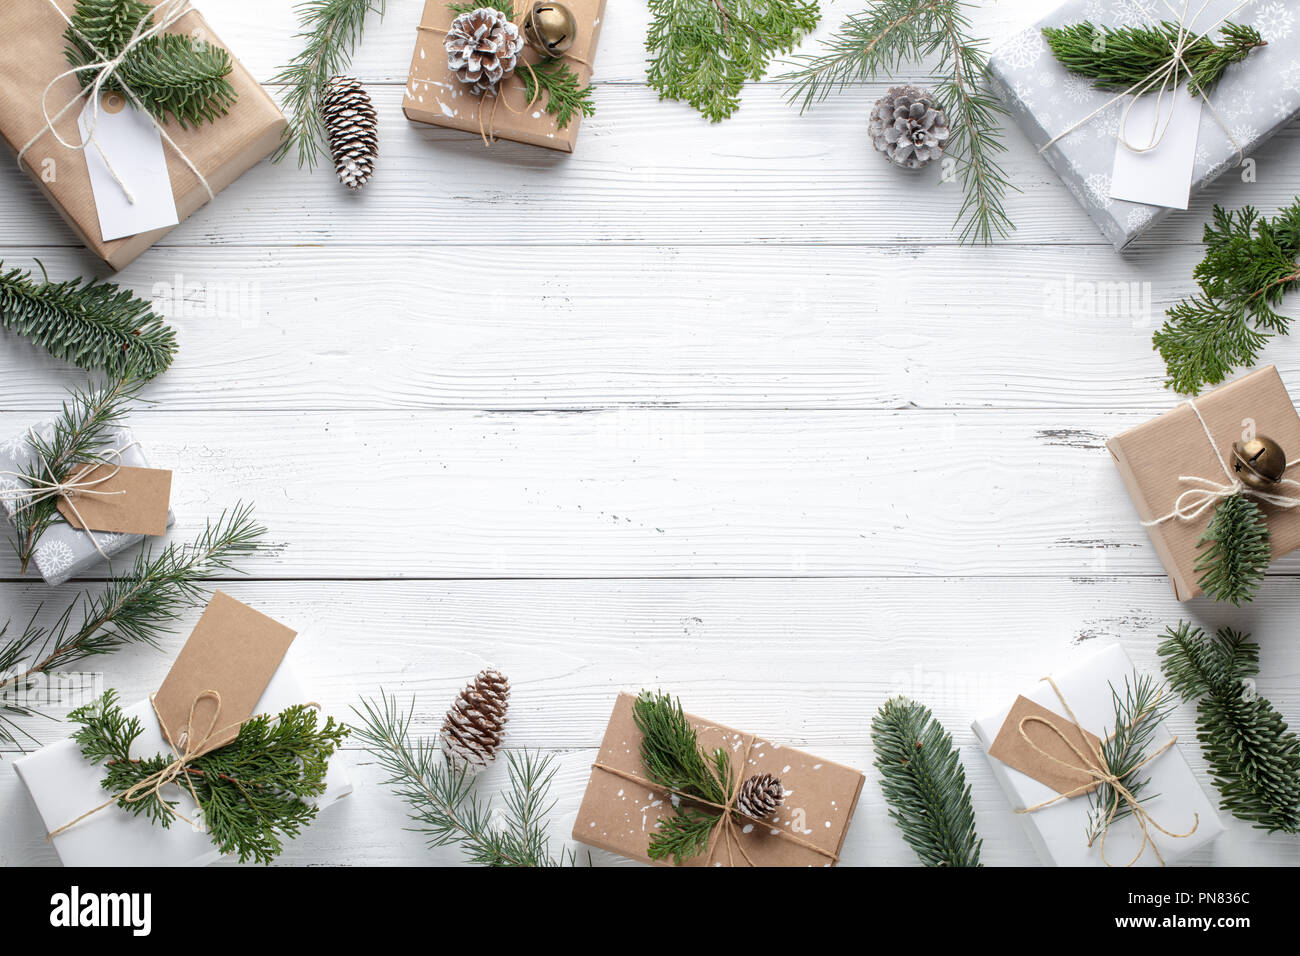 Weihnachten Geschenk, gestrickte Decke und Tannenzweigen auf hölzernen weißen Hintergrund. Flach, Ansicht von oben. Stockfoto